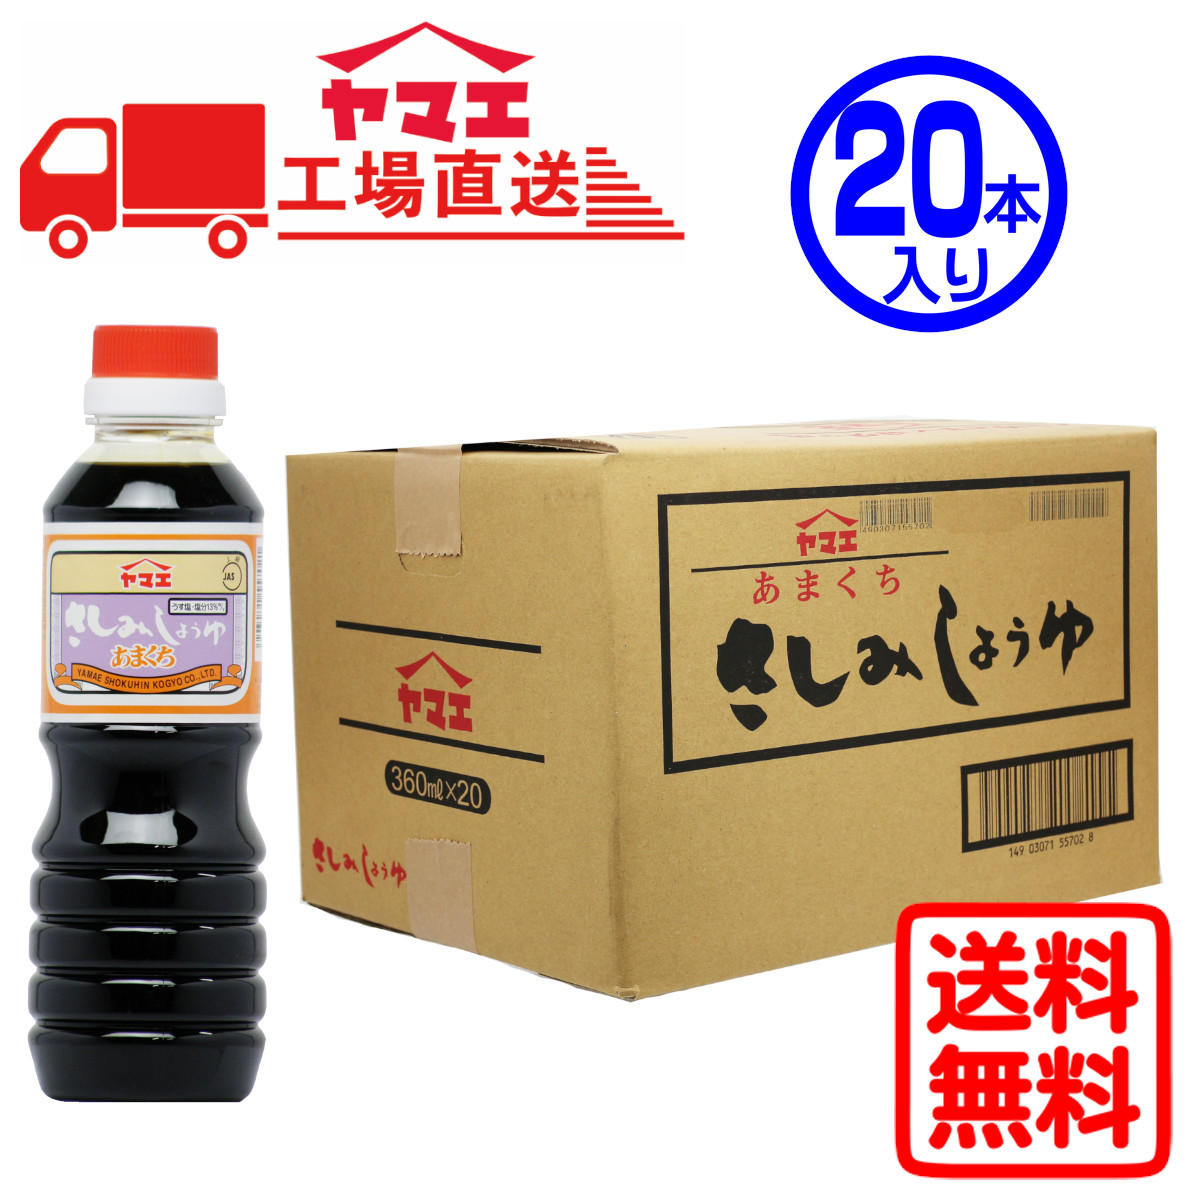 ヤマエ ヤマエ あまくちさしみ醤油 ペットボトル 360ml×20本 刺身醤油の商品画像